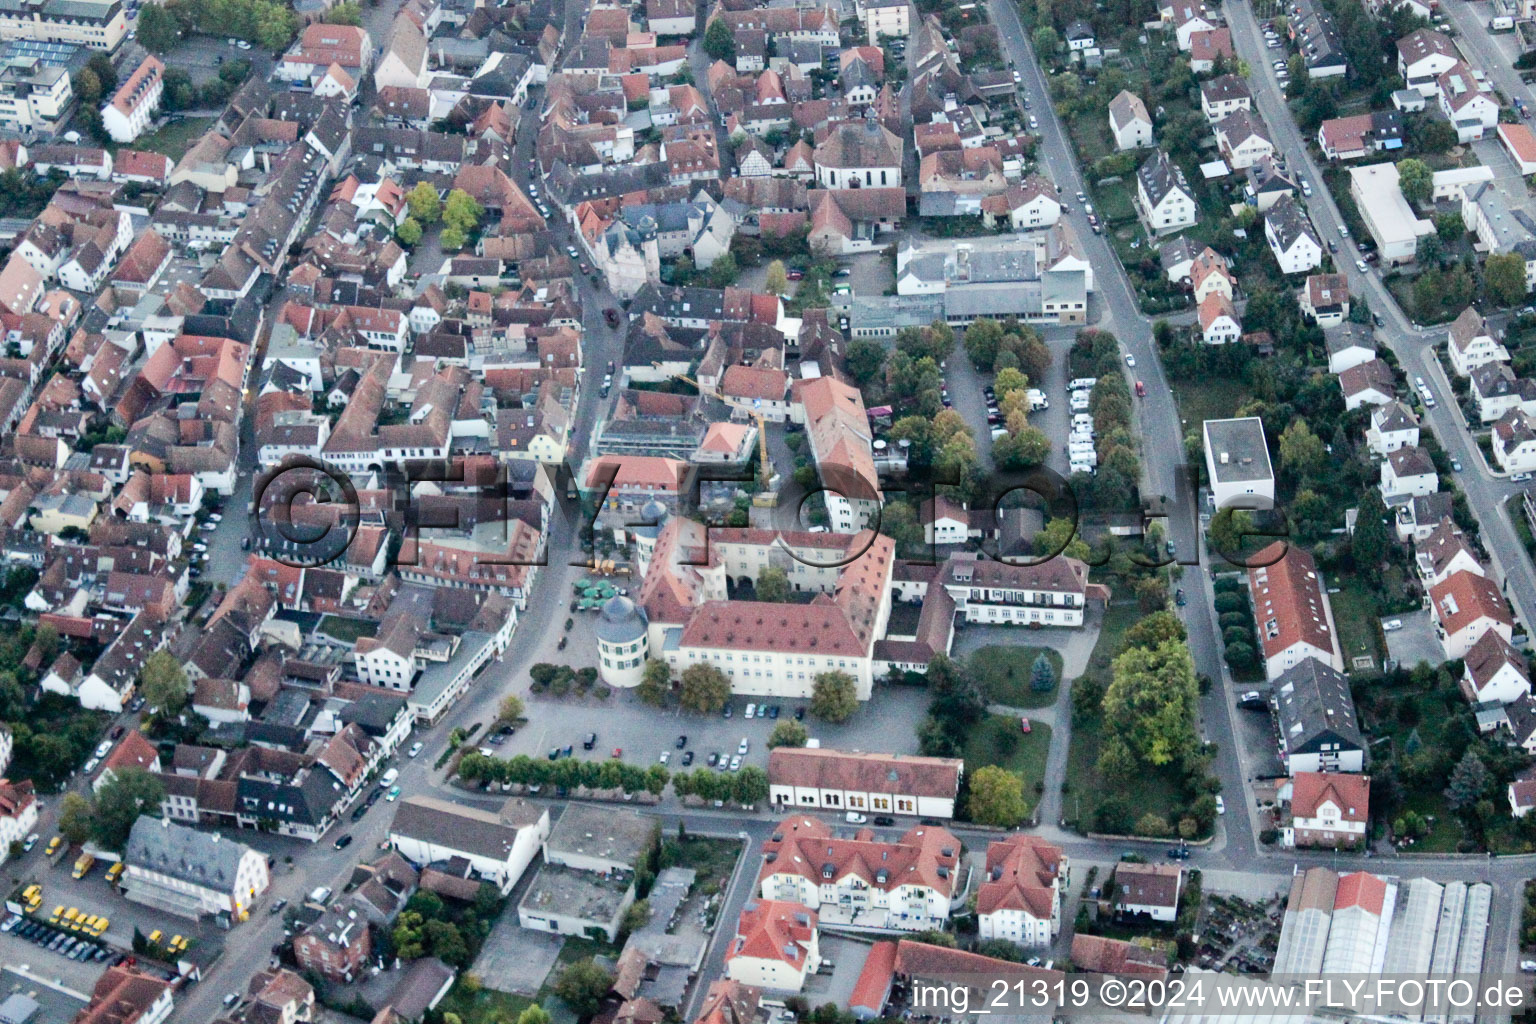 Bad Bergzabern im Bundesland Rheinland-Pfalz, Deutschland von der Drohne aus gesehen